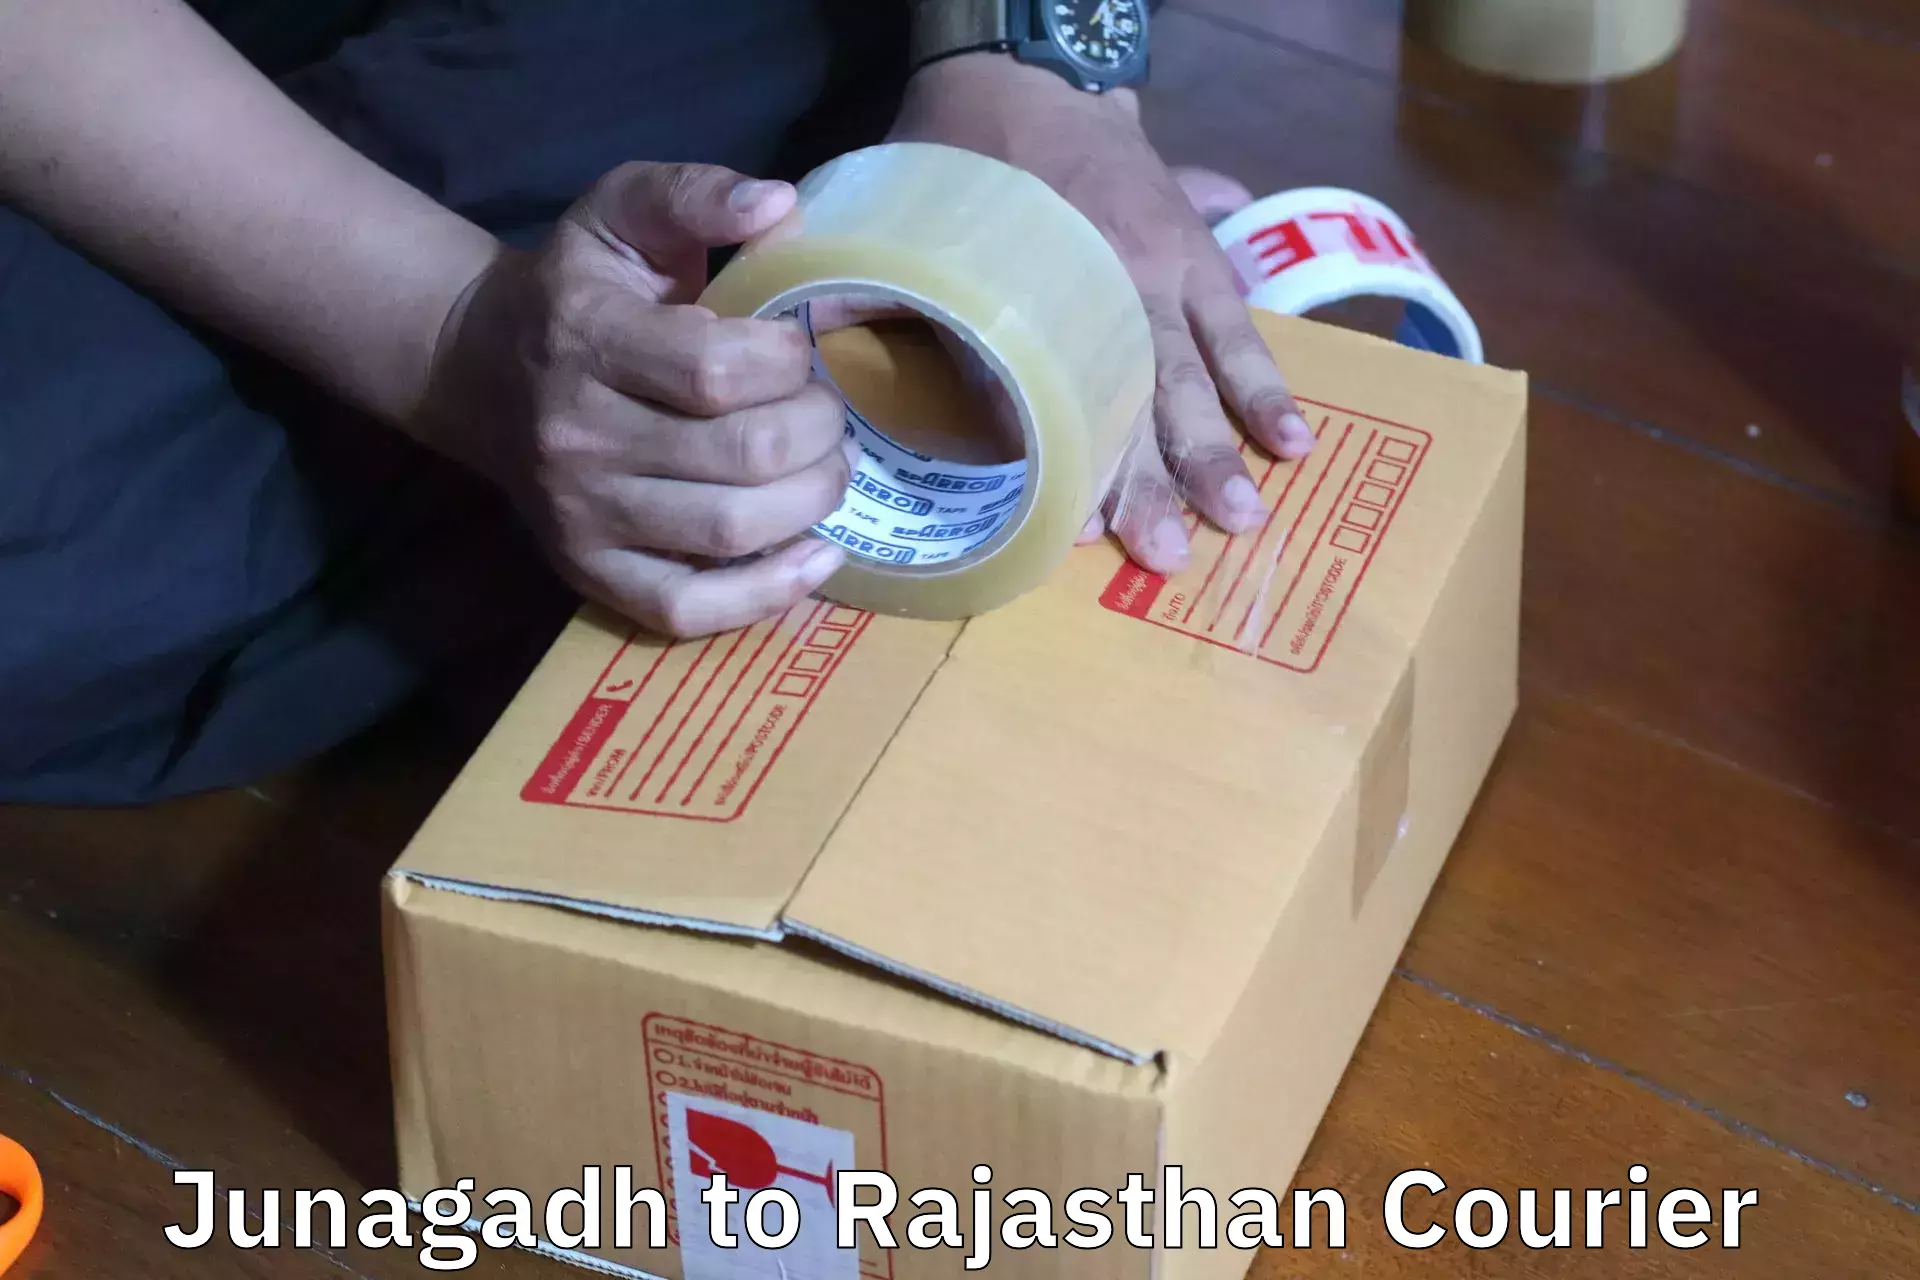 Furniture moving experts Junagadh to Rajasthan